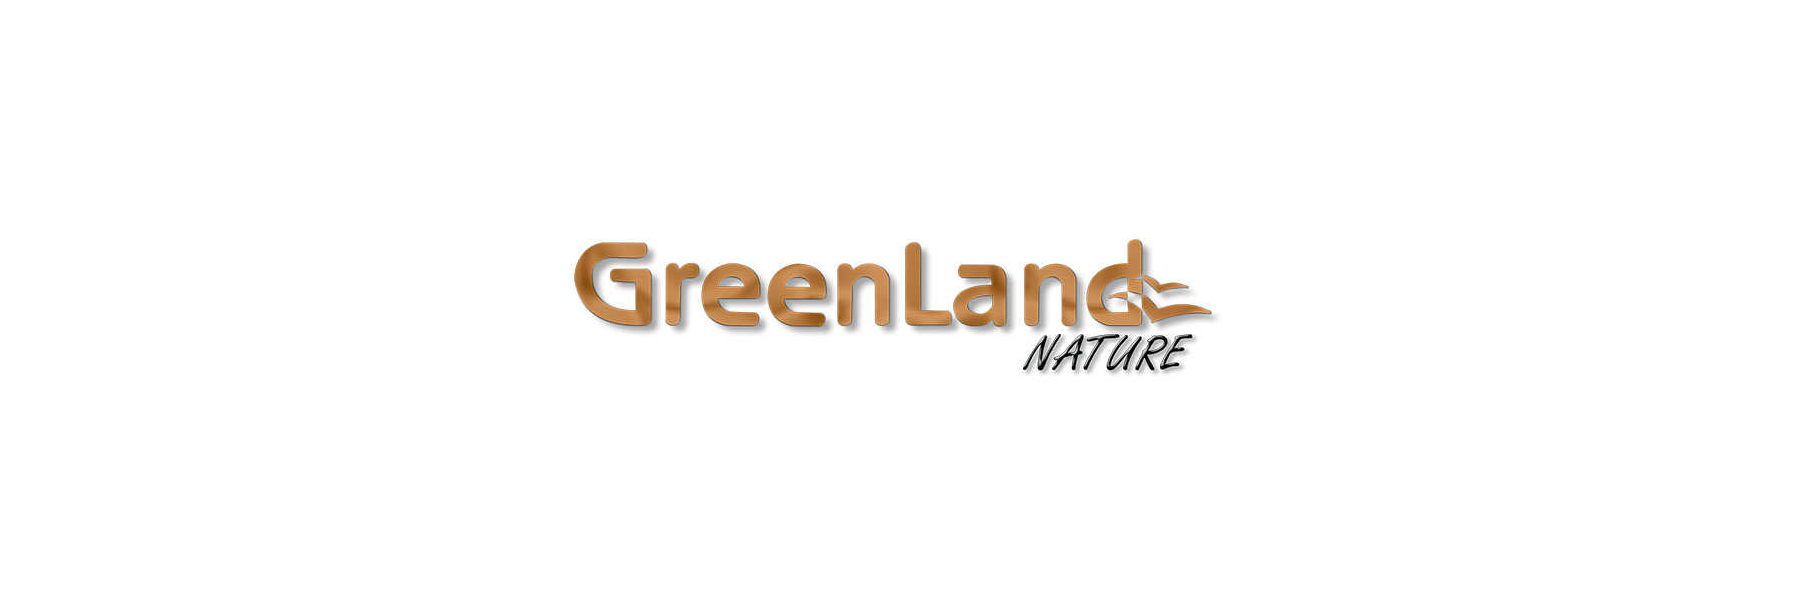 gegerbt Online Greenland Lederwaren Nature Gel Geldboerse natürlich -